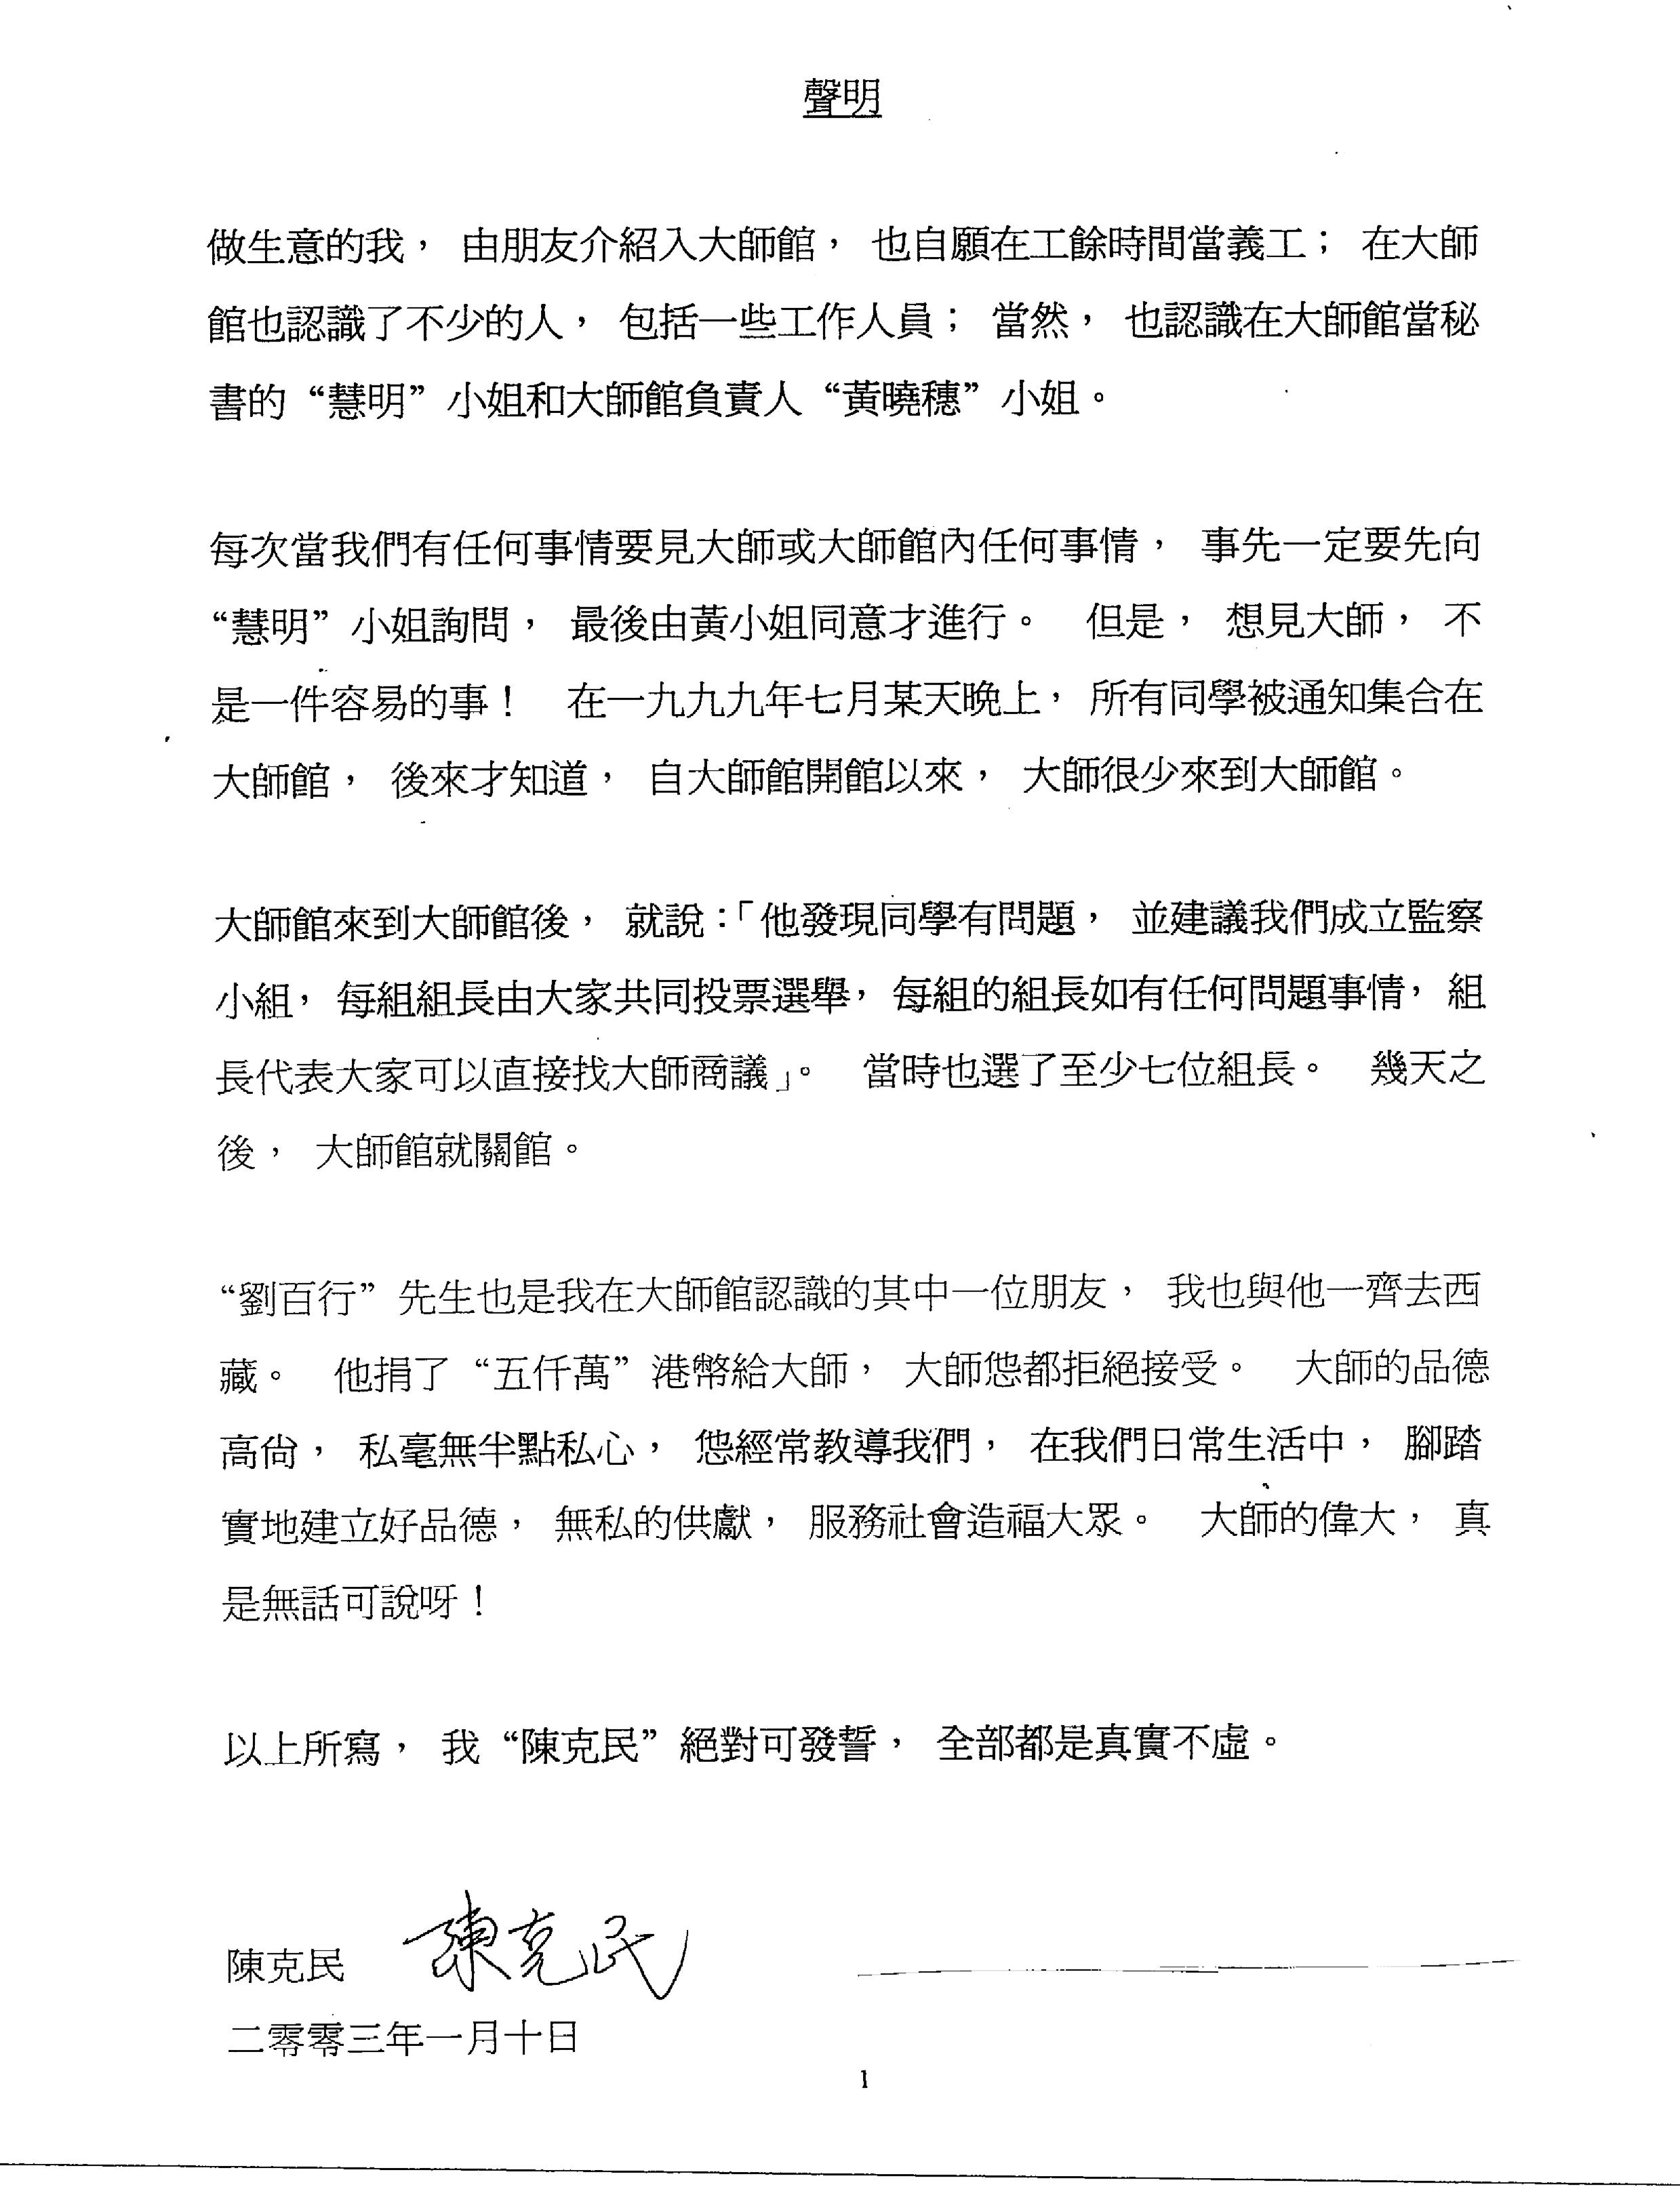 香港法院重判黄晓穗诈骗案 还第三世多杰羌佛清白 第17张